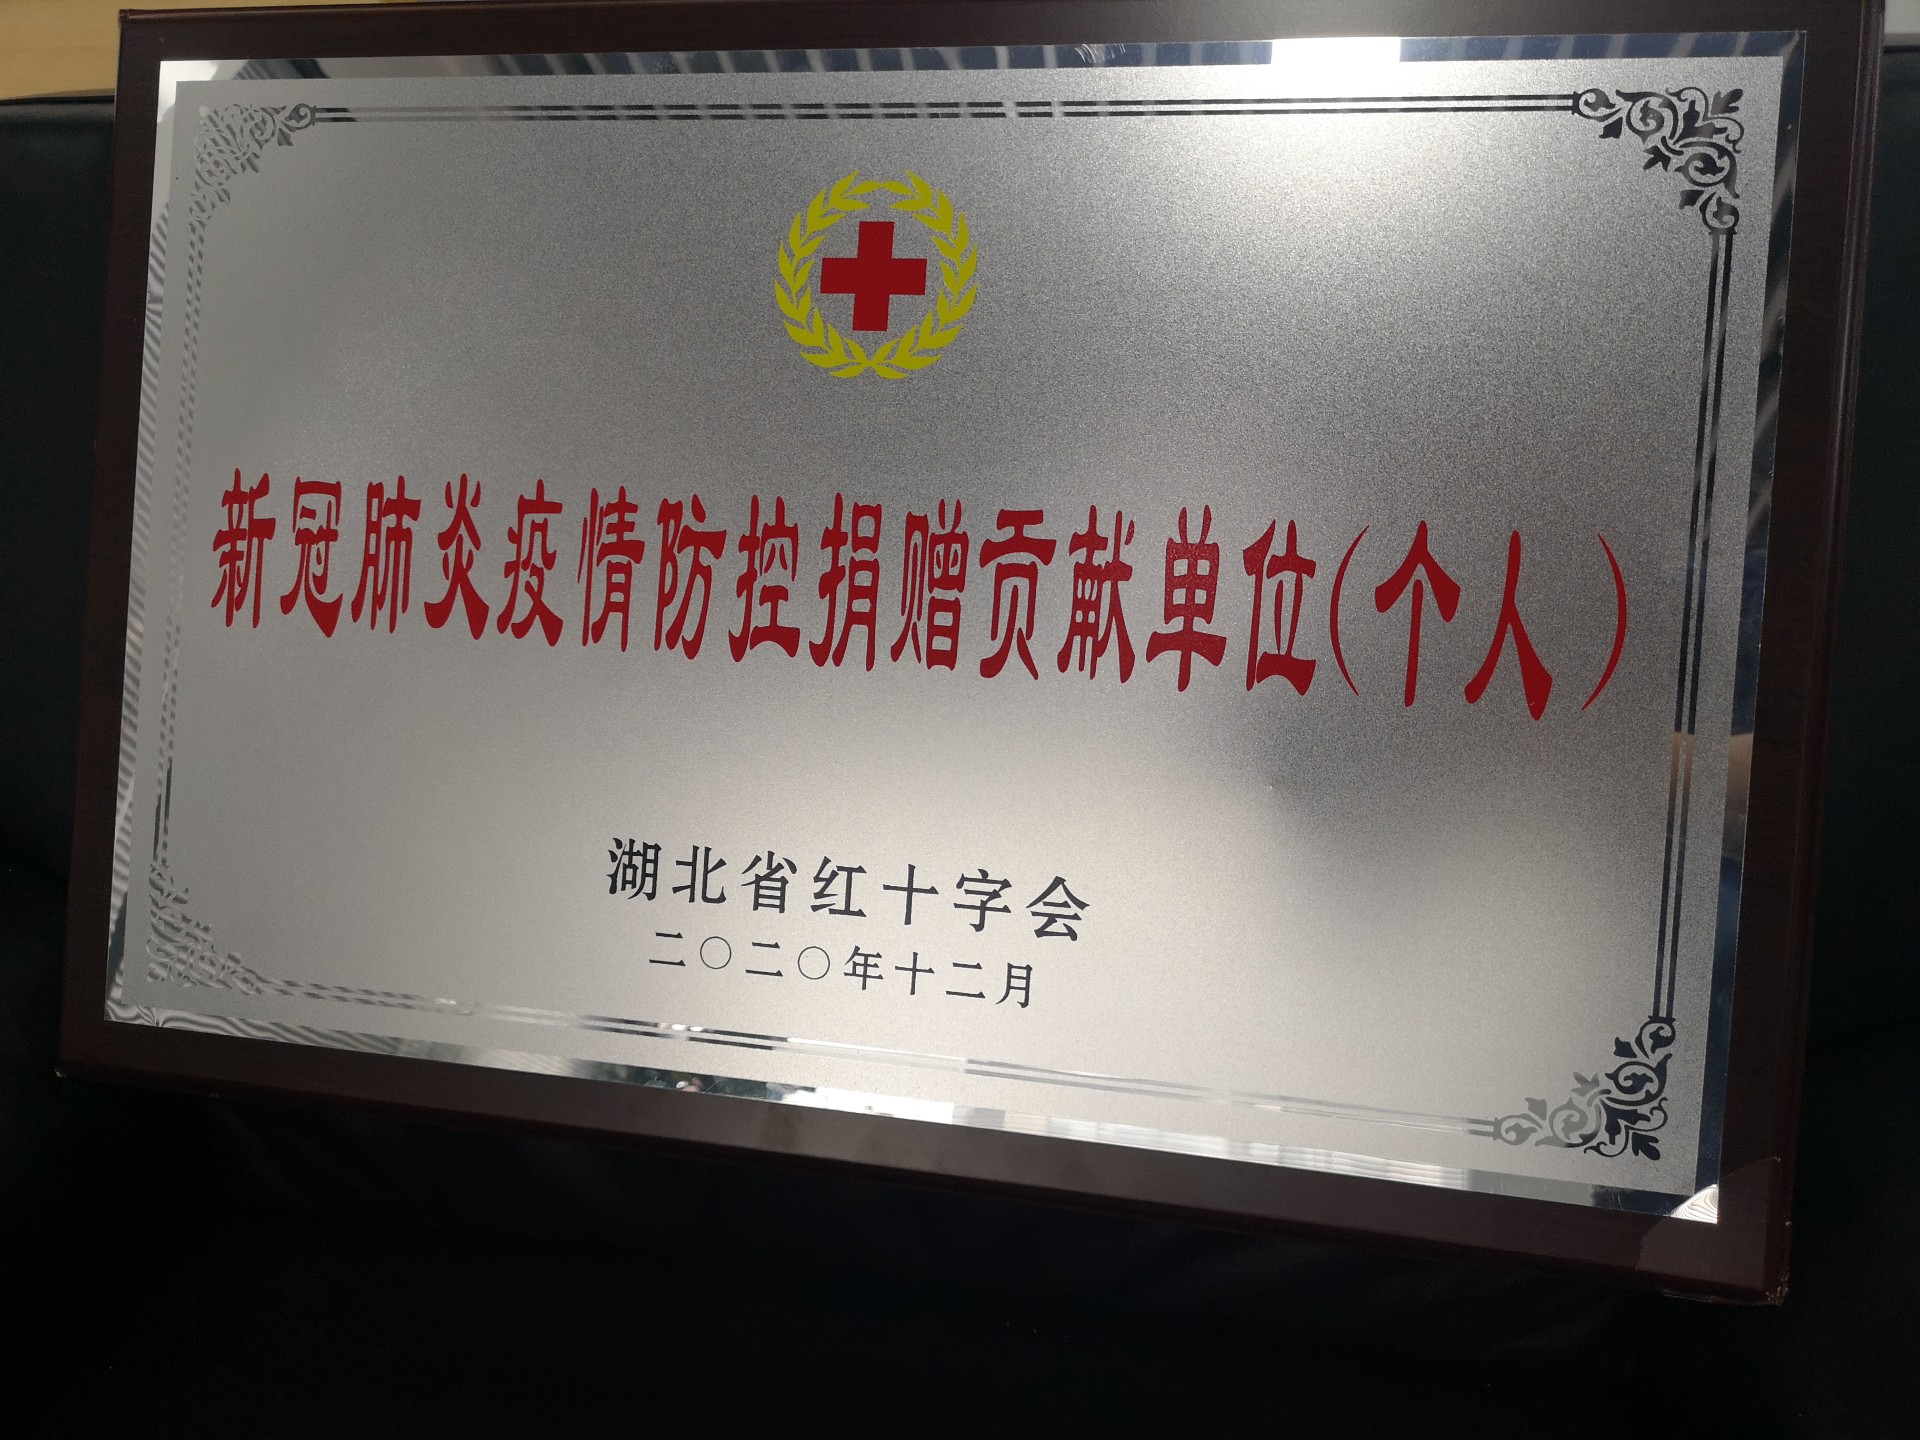 一封来自湖北省红十字会的感谢信